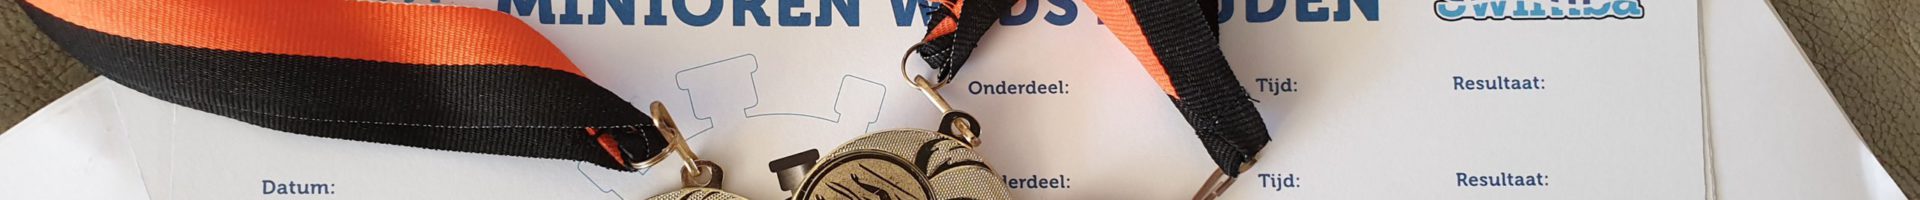 28 medailles en 28 persoonlijke records voor Biesboschzwemmers